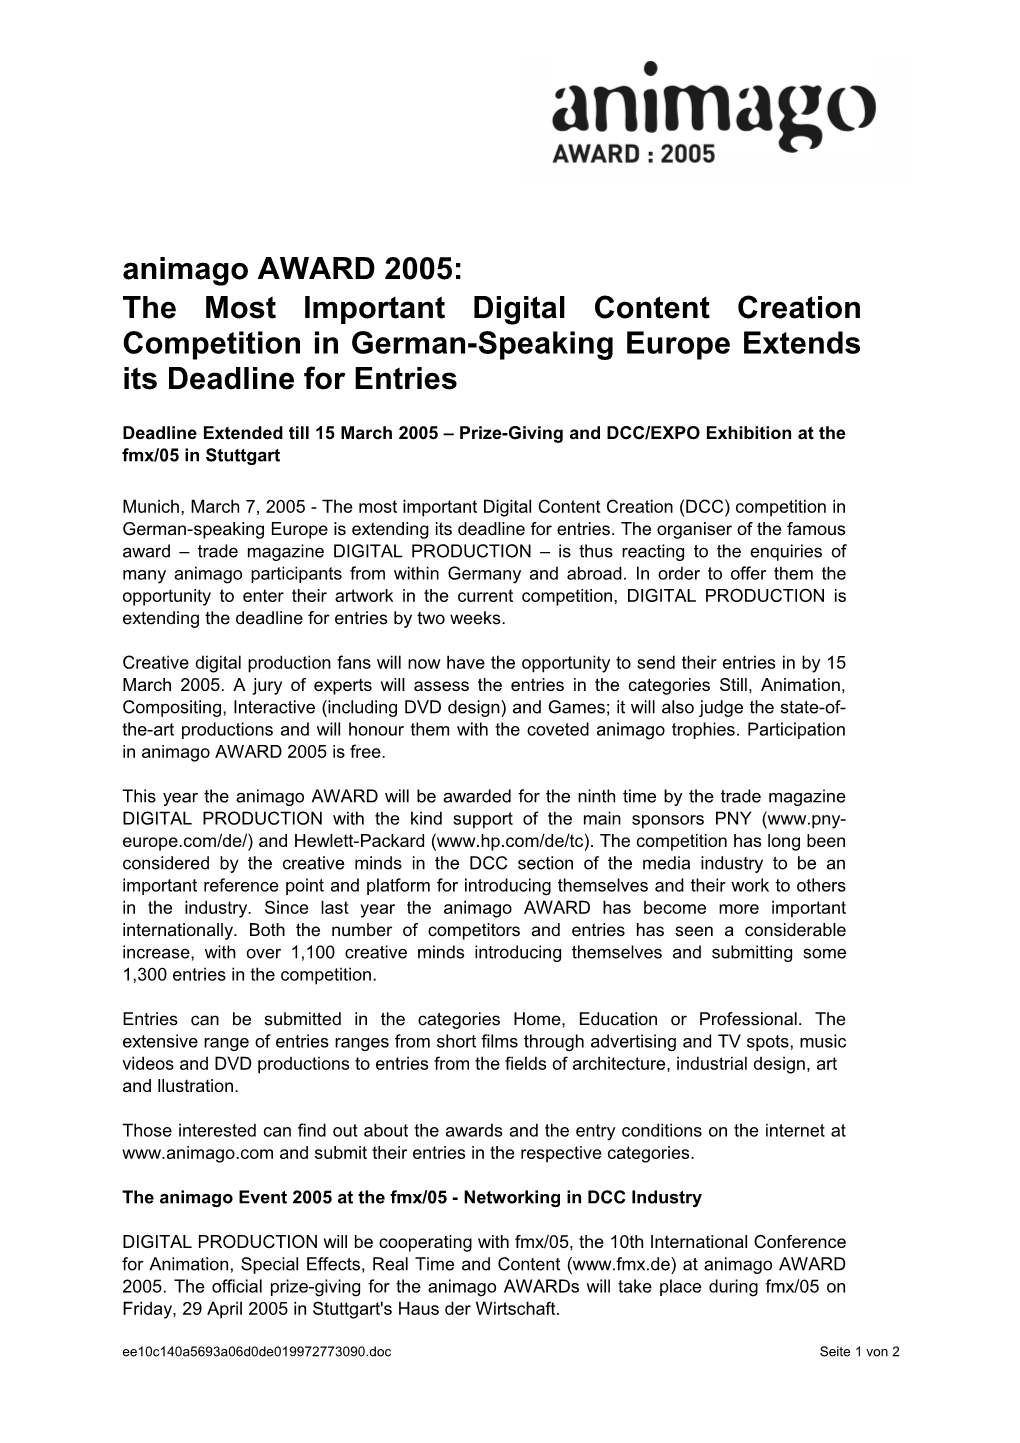 Animago 2003: Registrierung Hat Begonnen